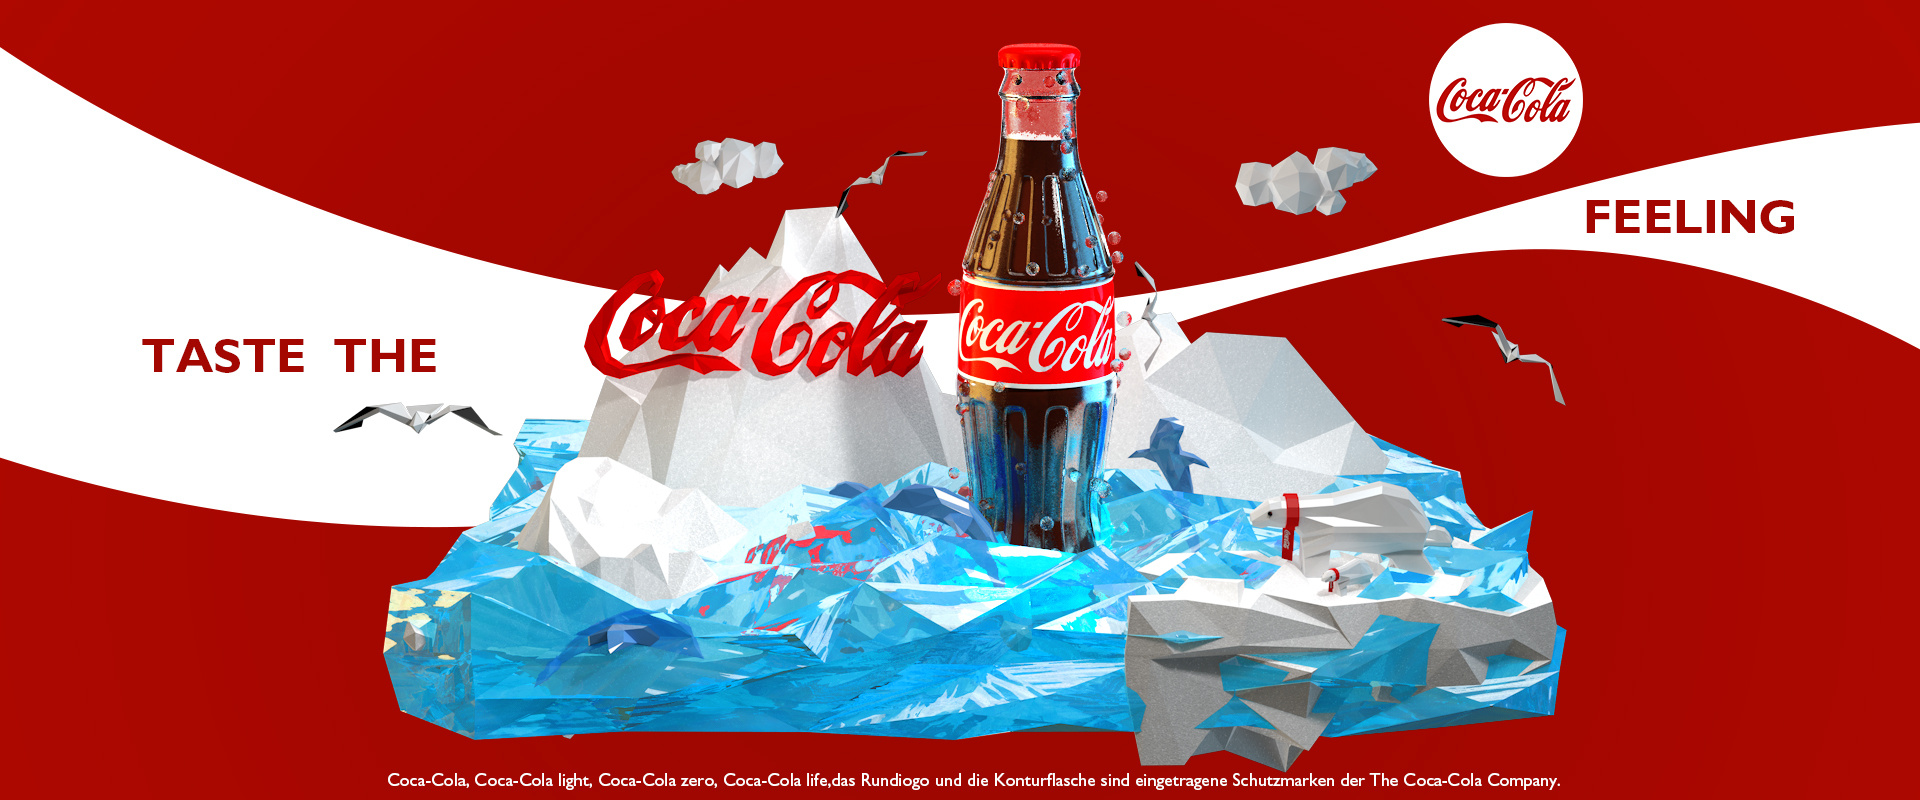 可口可乐广告素材图片